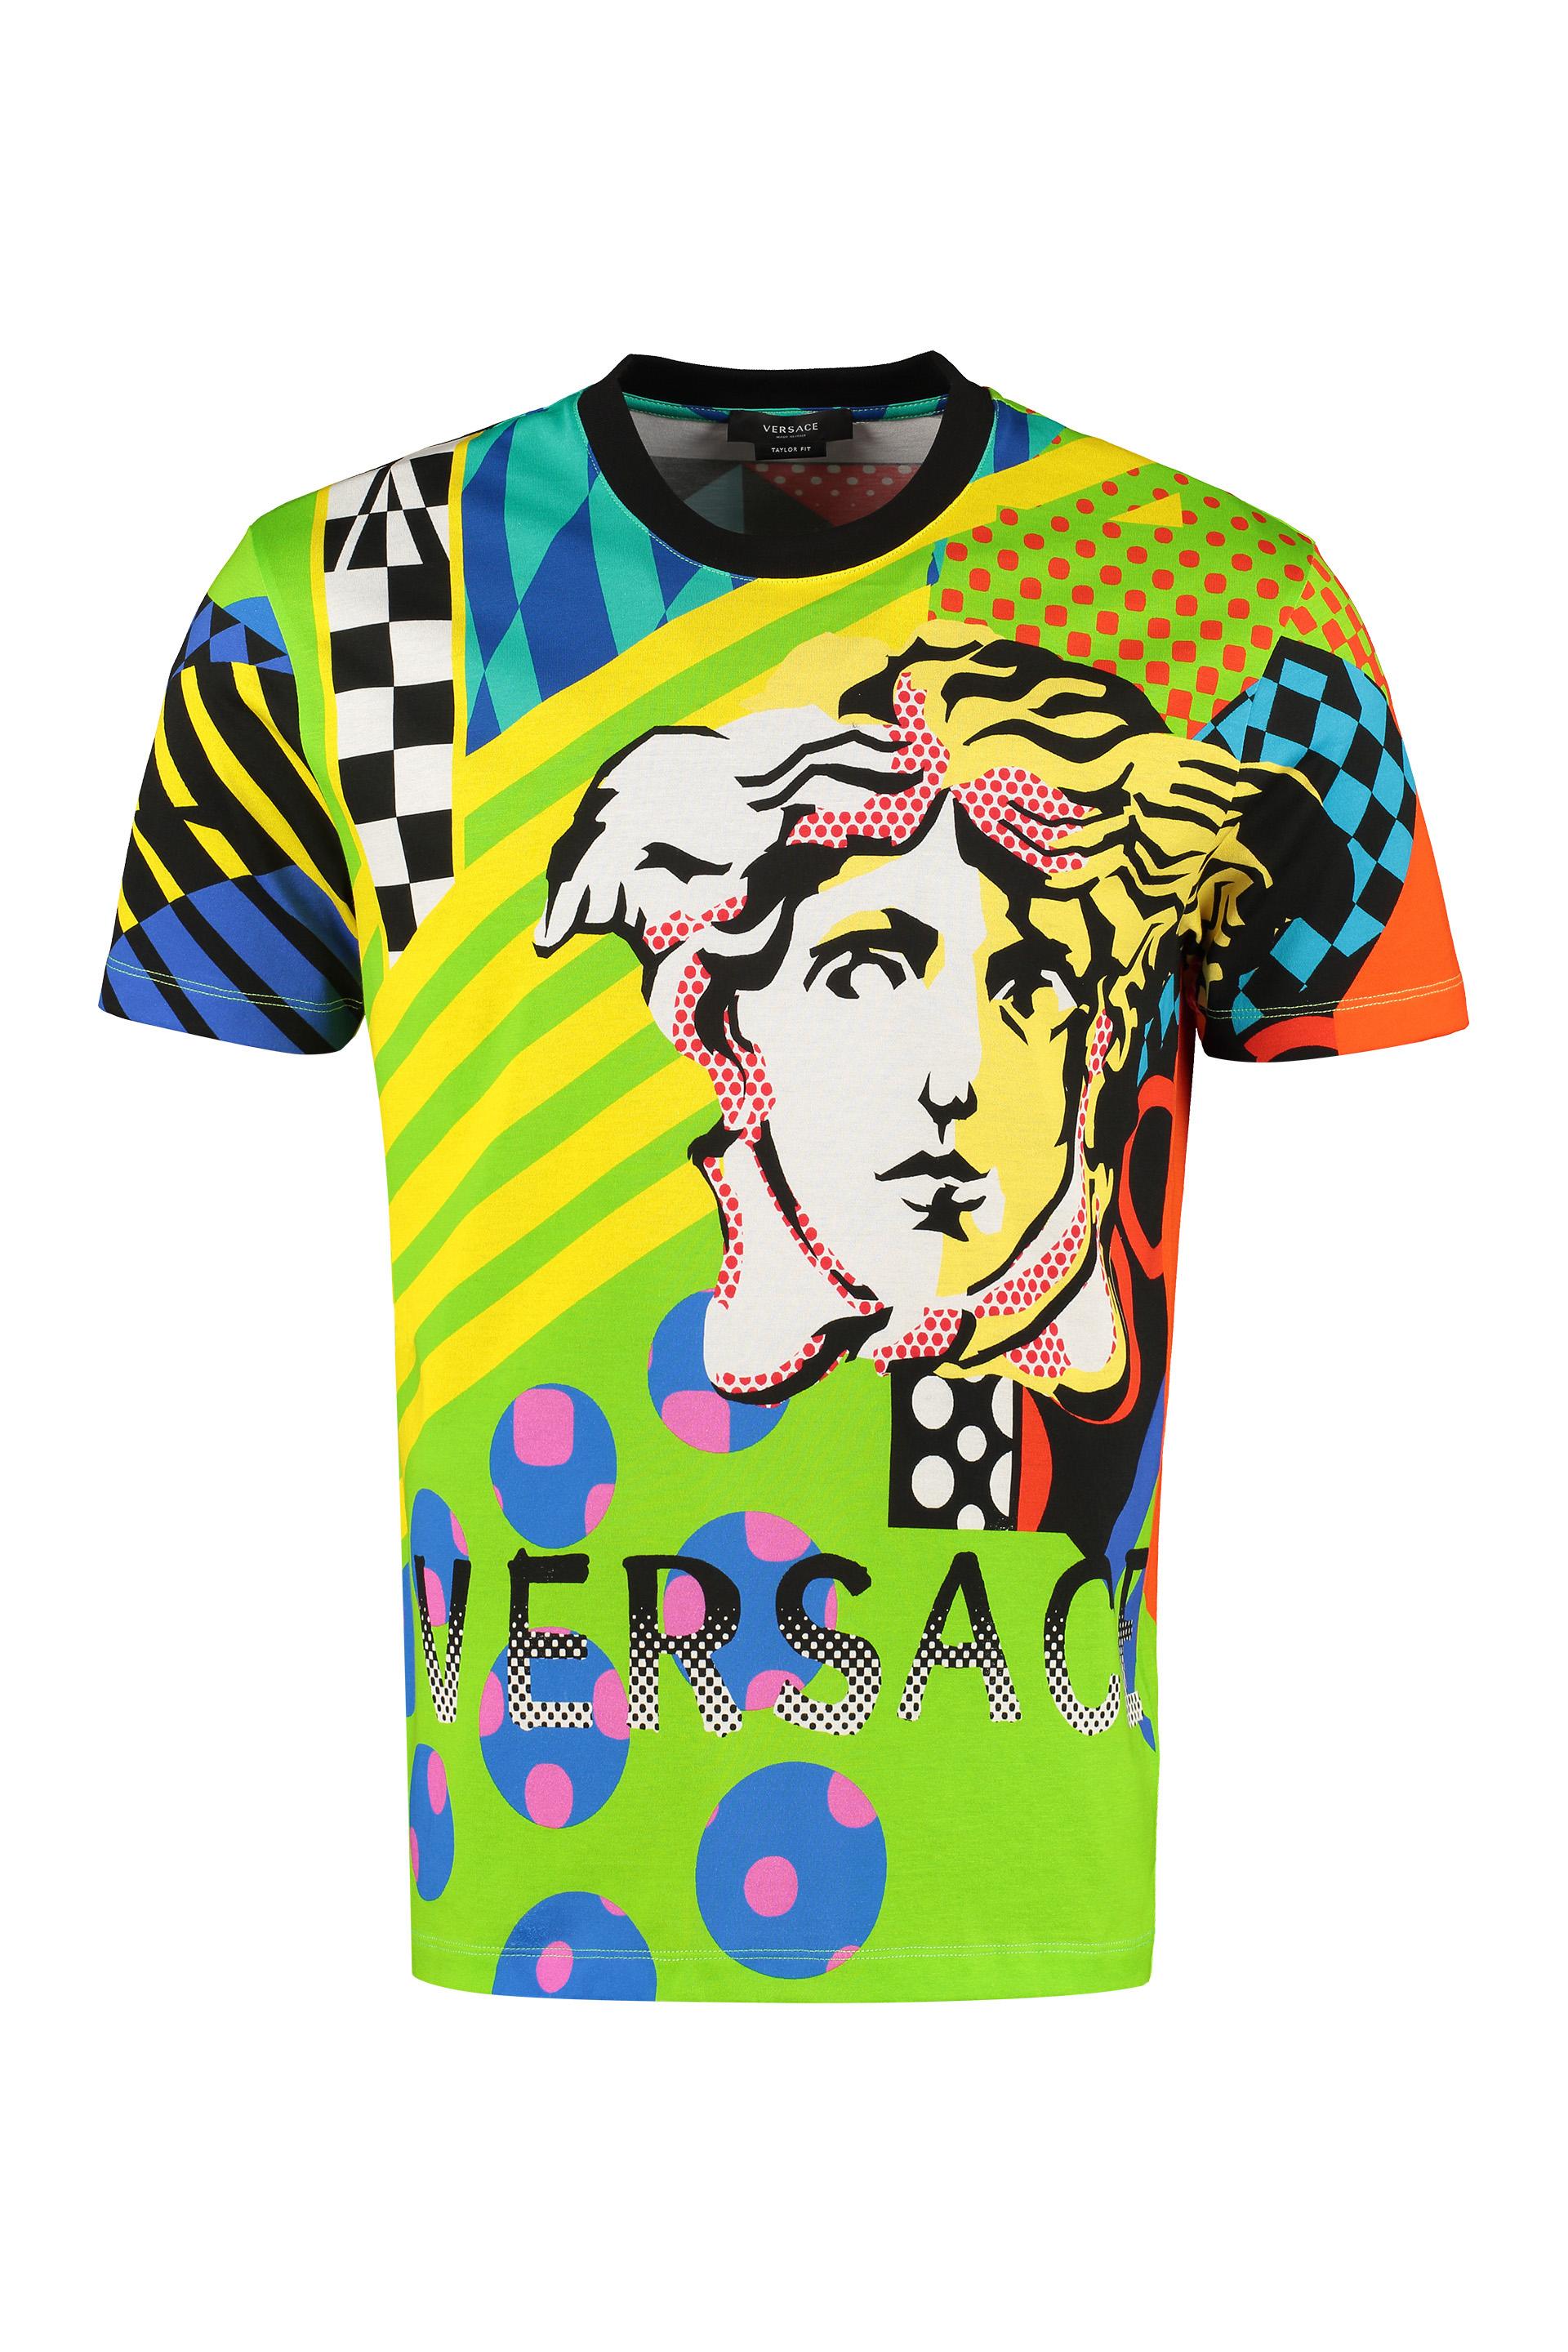 Versace Cotton Patterned T-shirt Multicolour for Men - Lyst